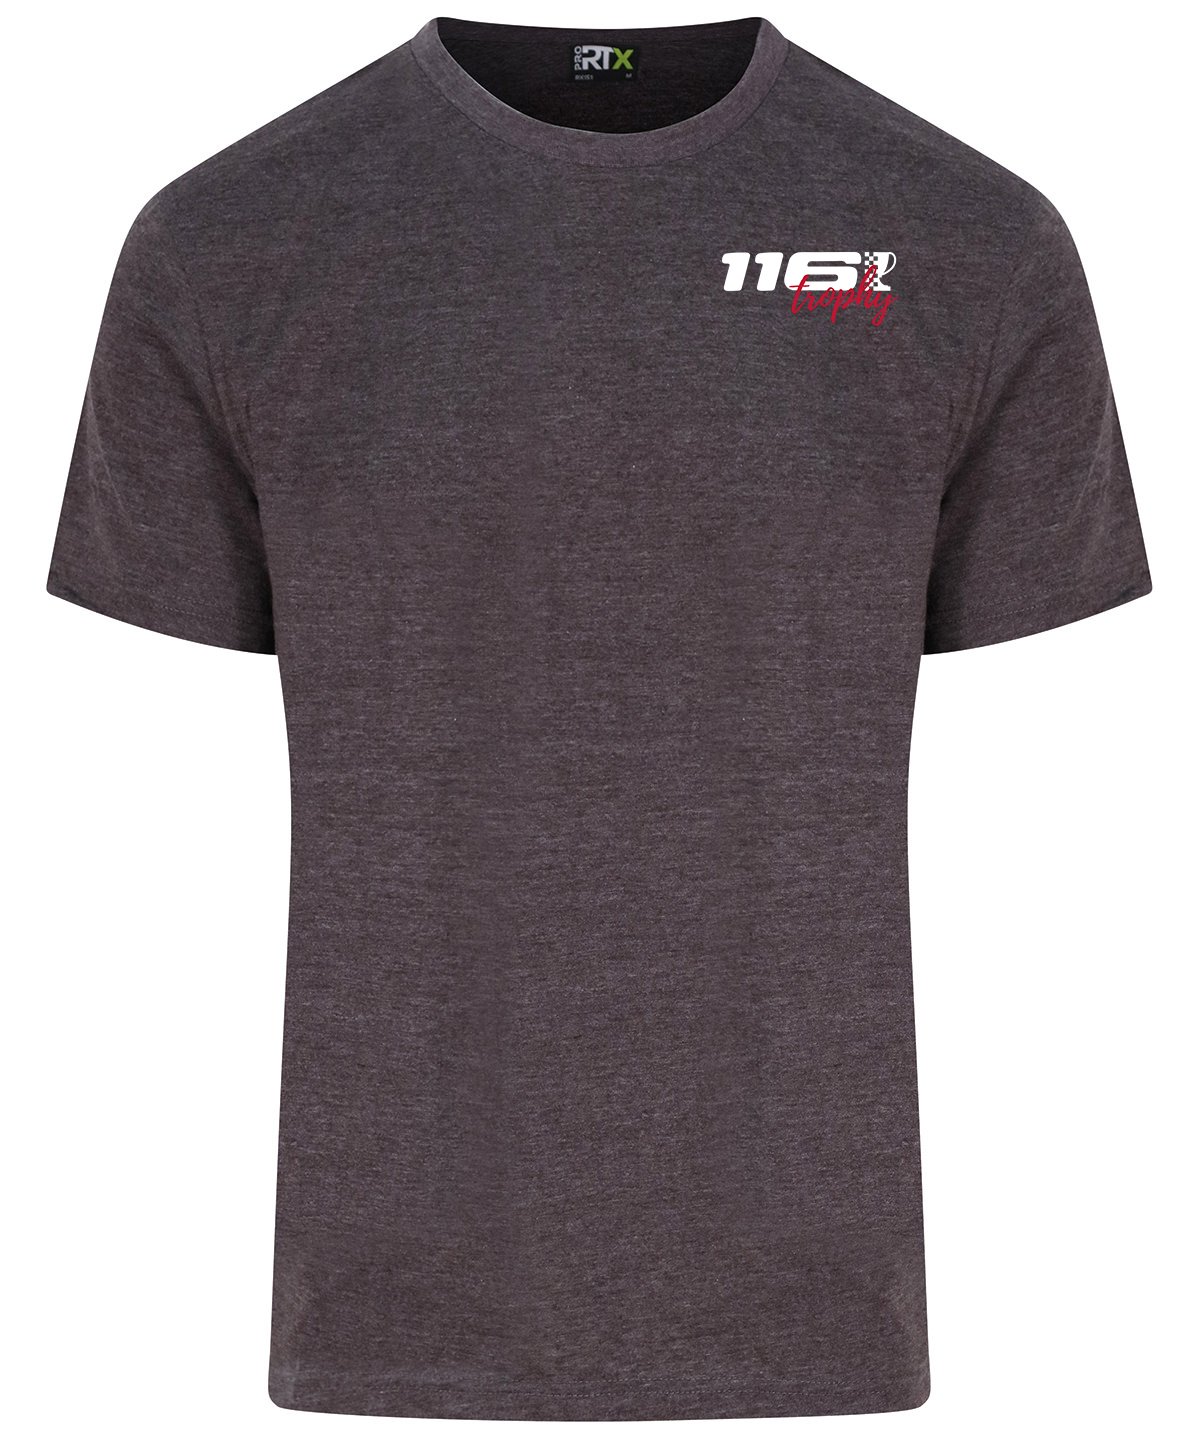 116 Trophy Unisex T-Shirt